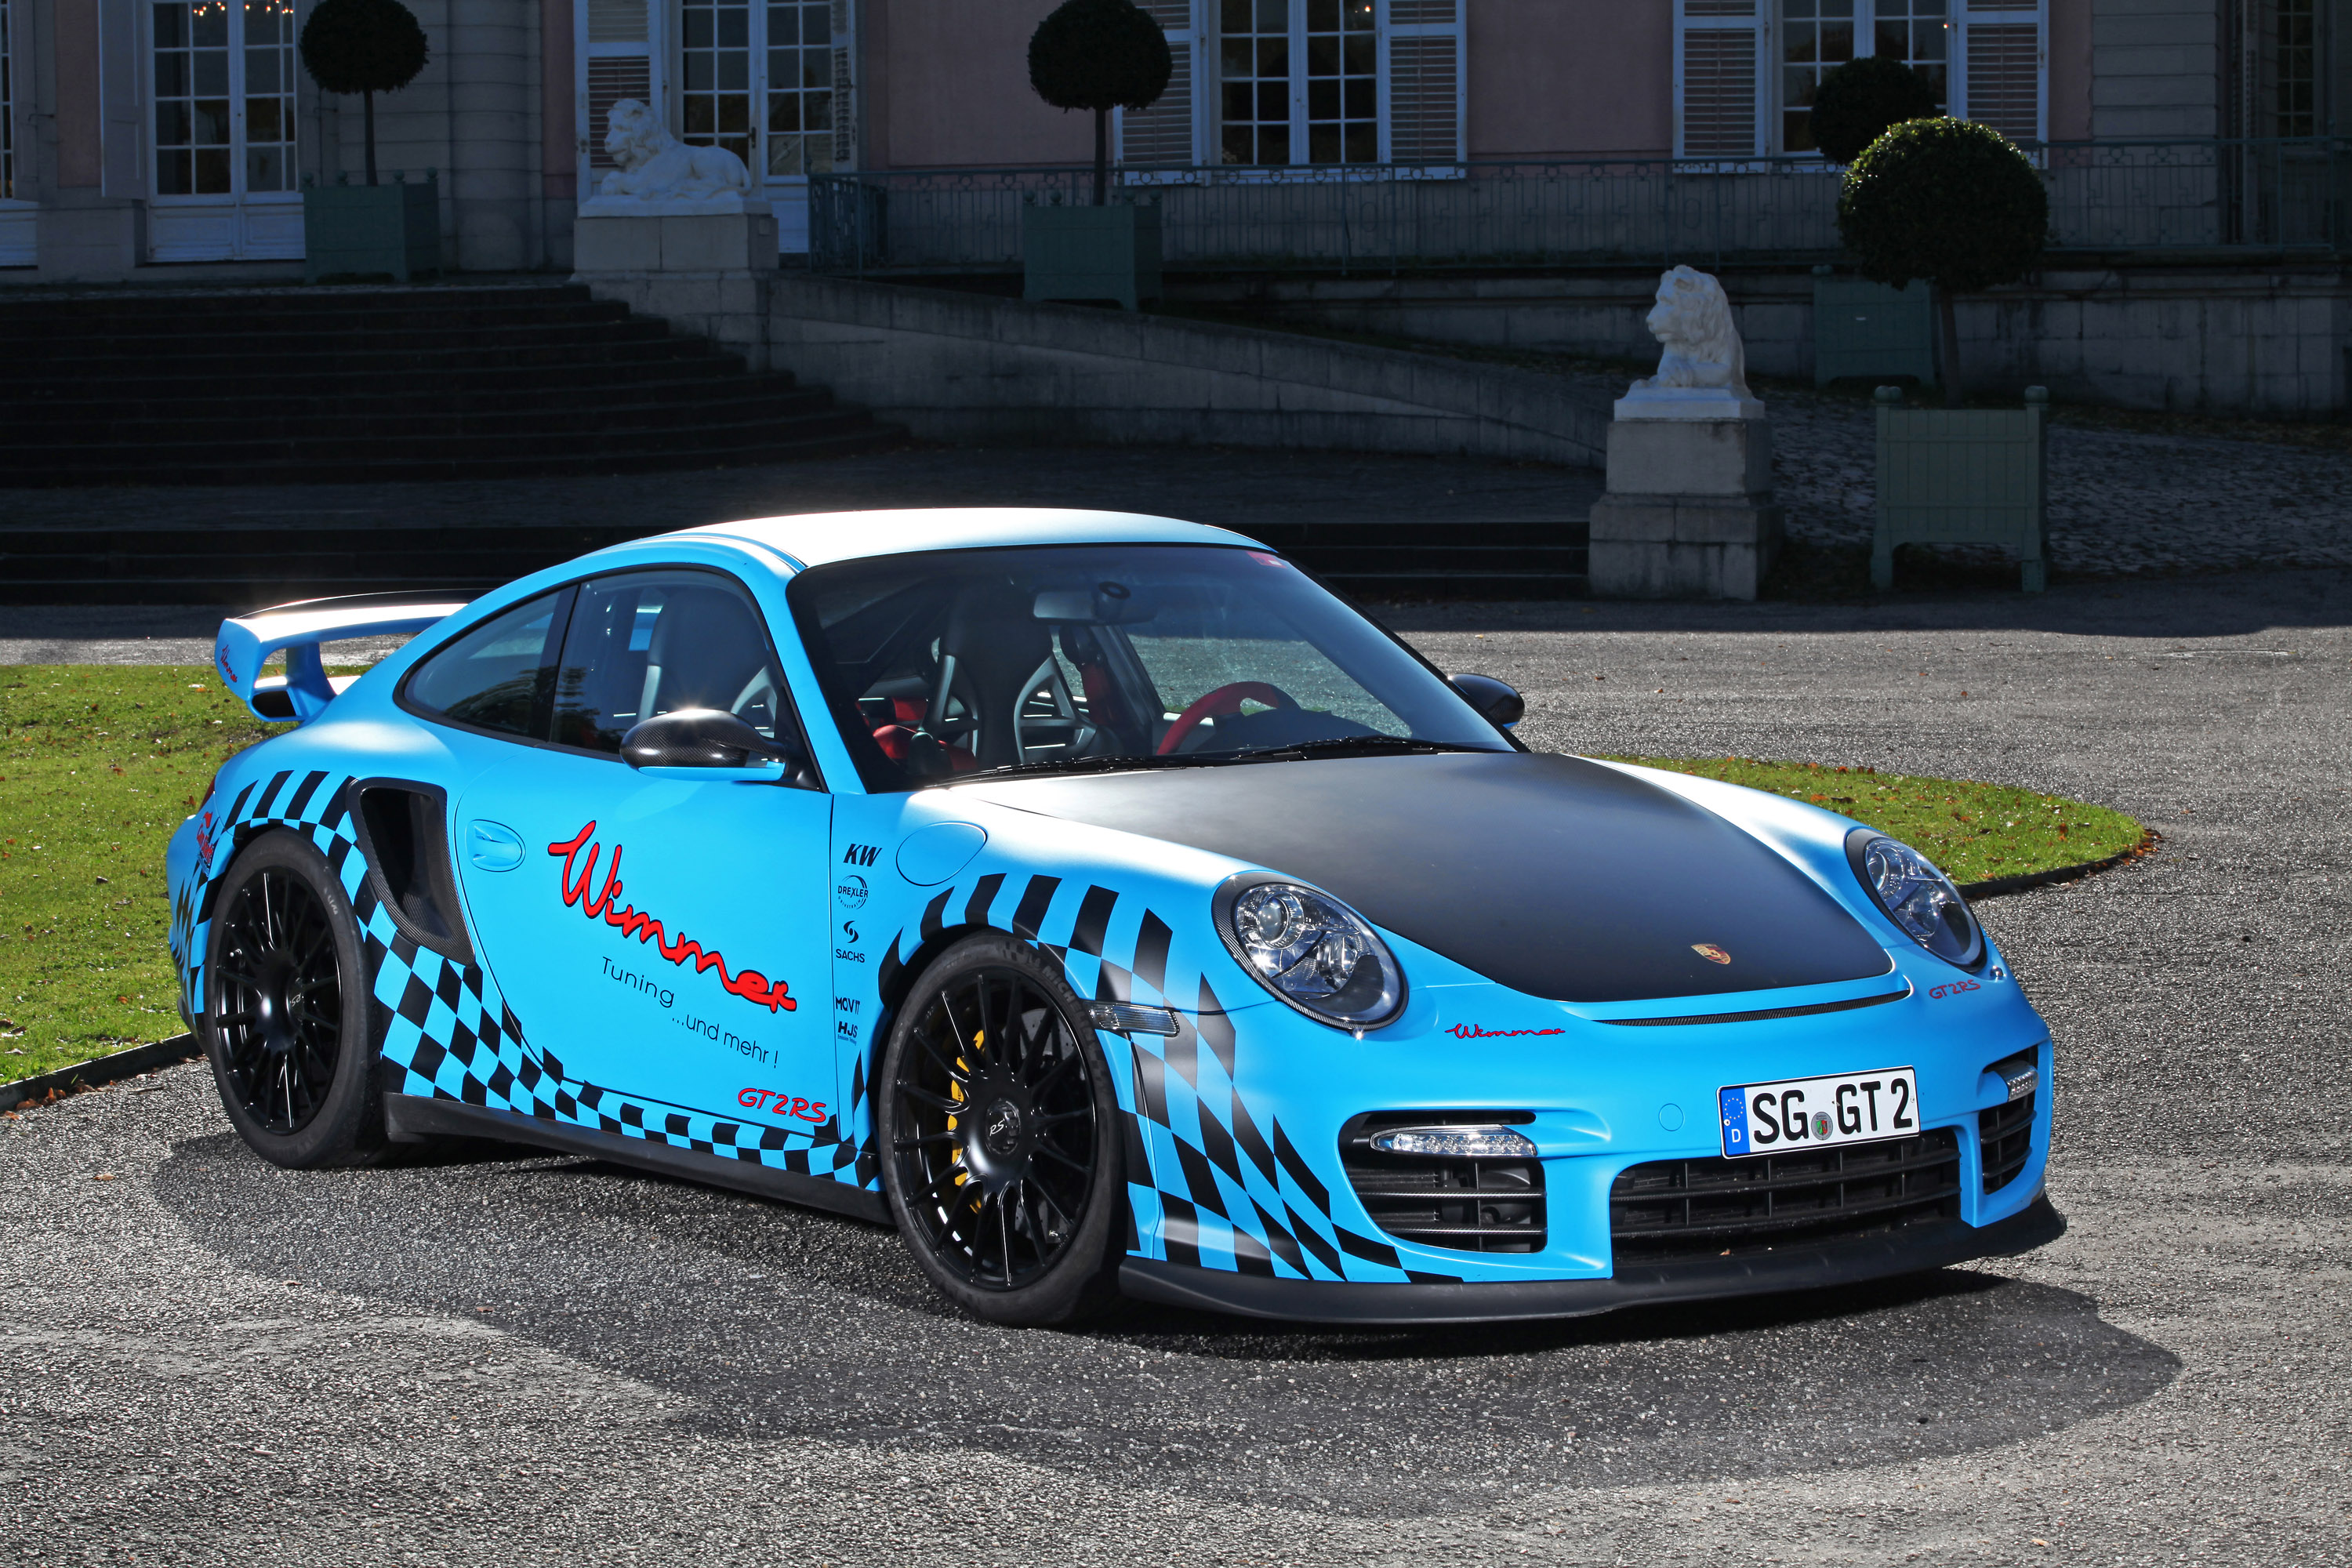 Descargar fondos de escritorio de Porsche 911 Gt2 HD